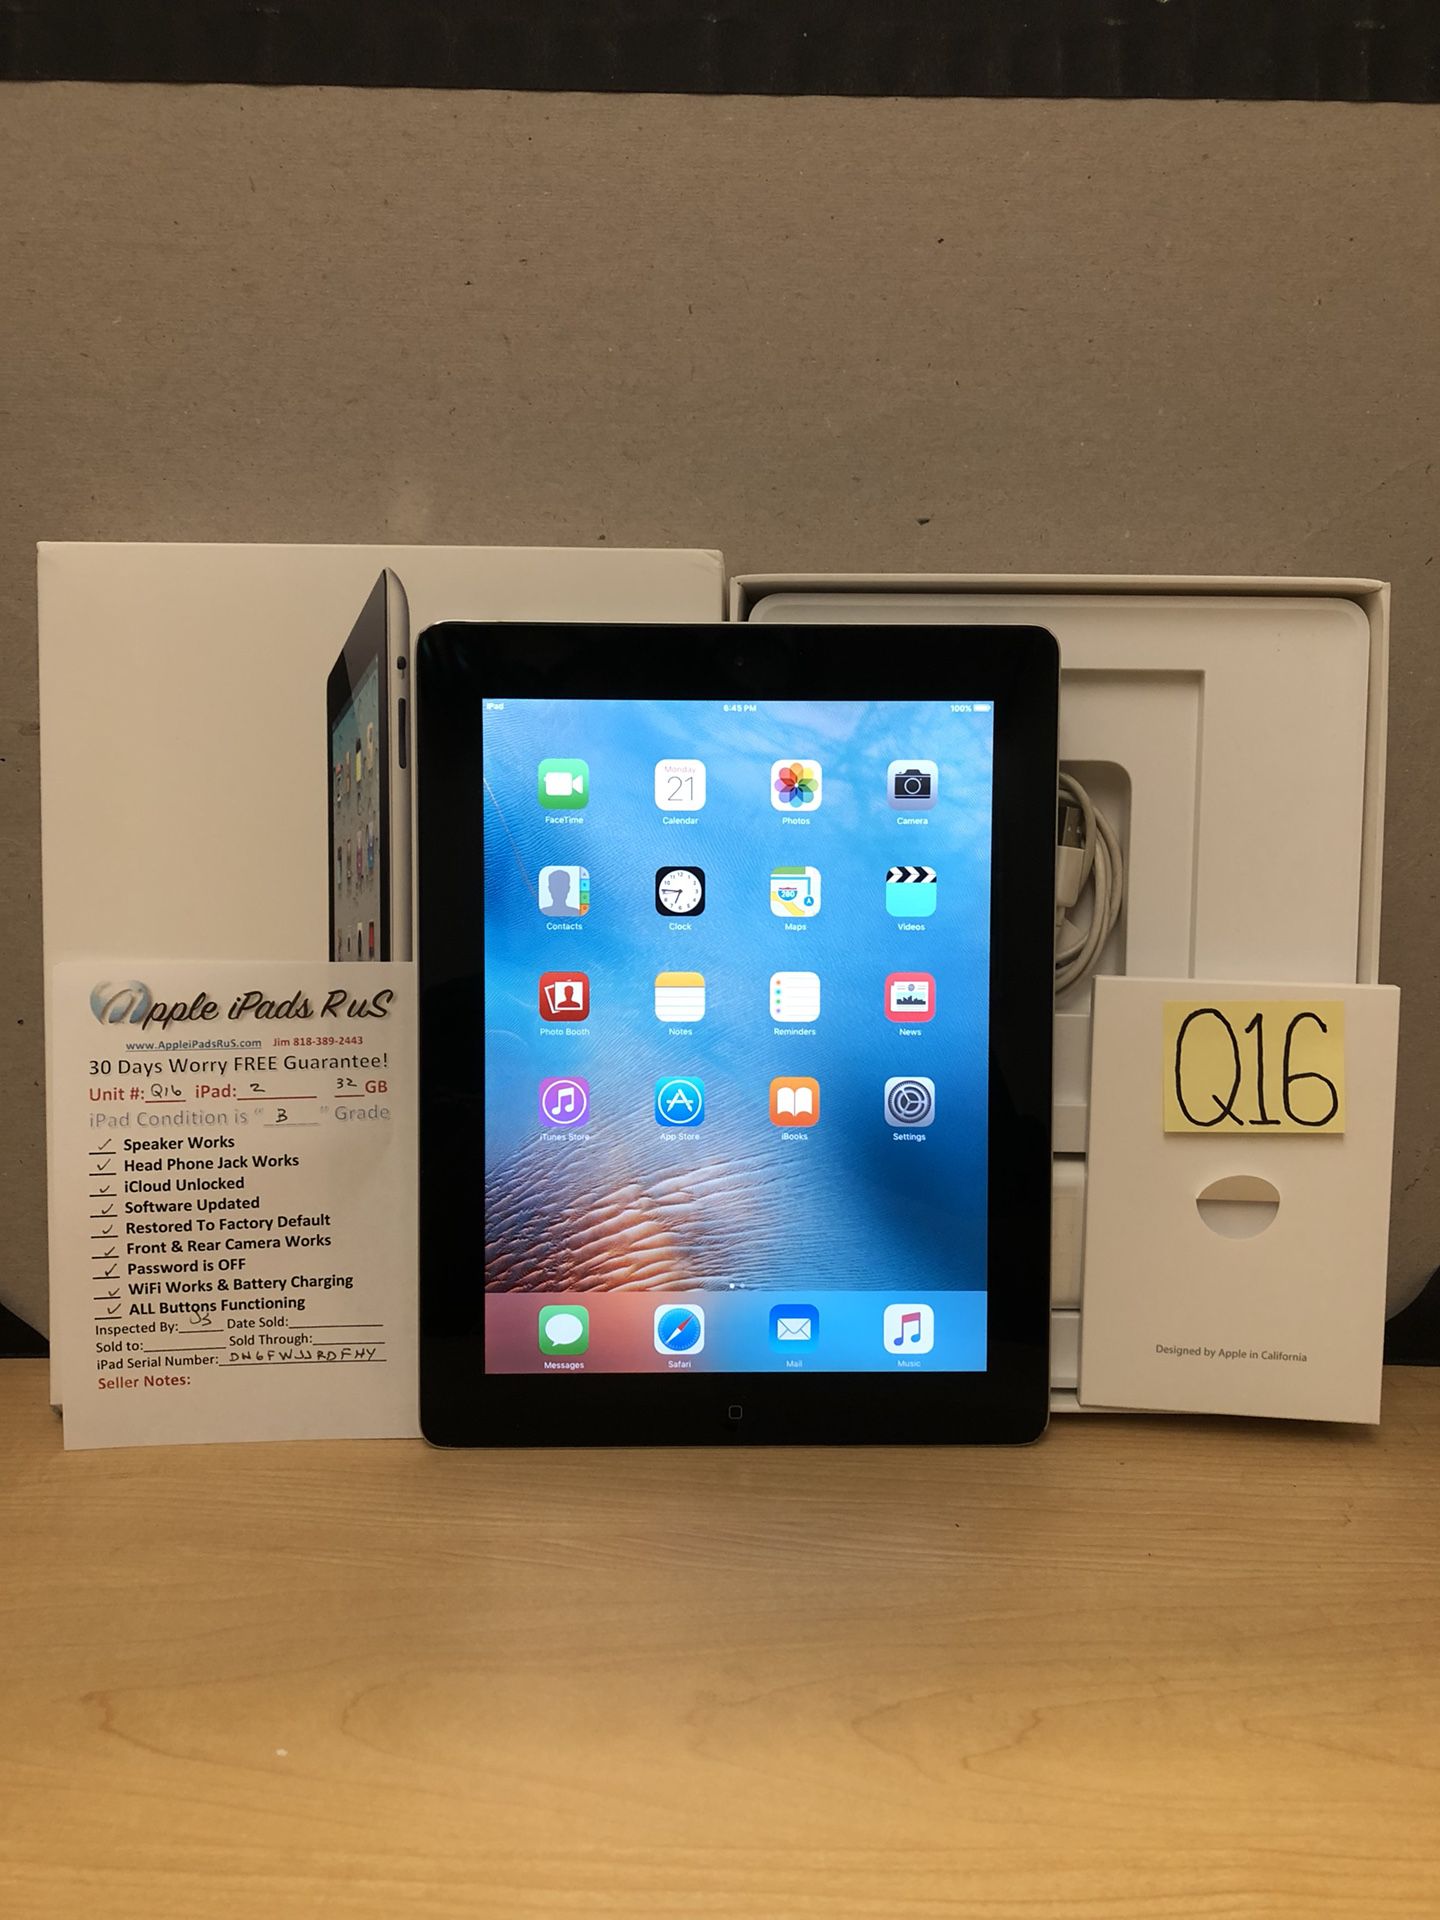 Q16 - iPad 2 32GB